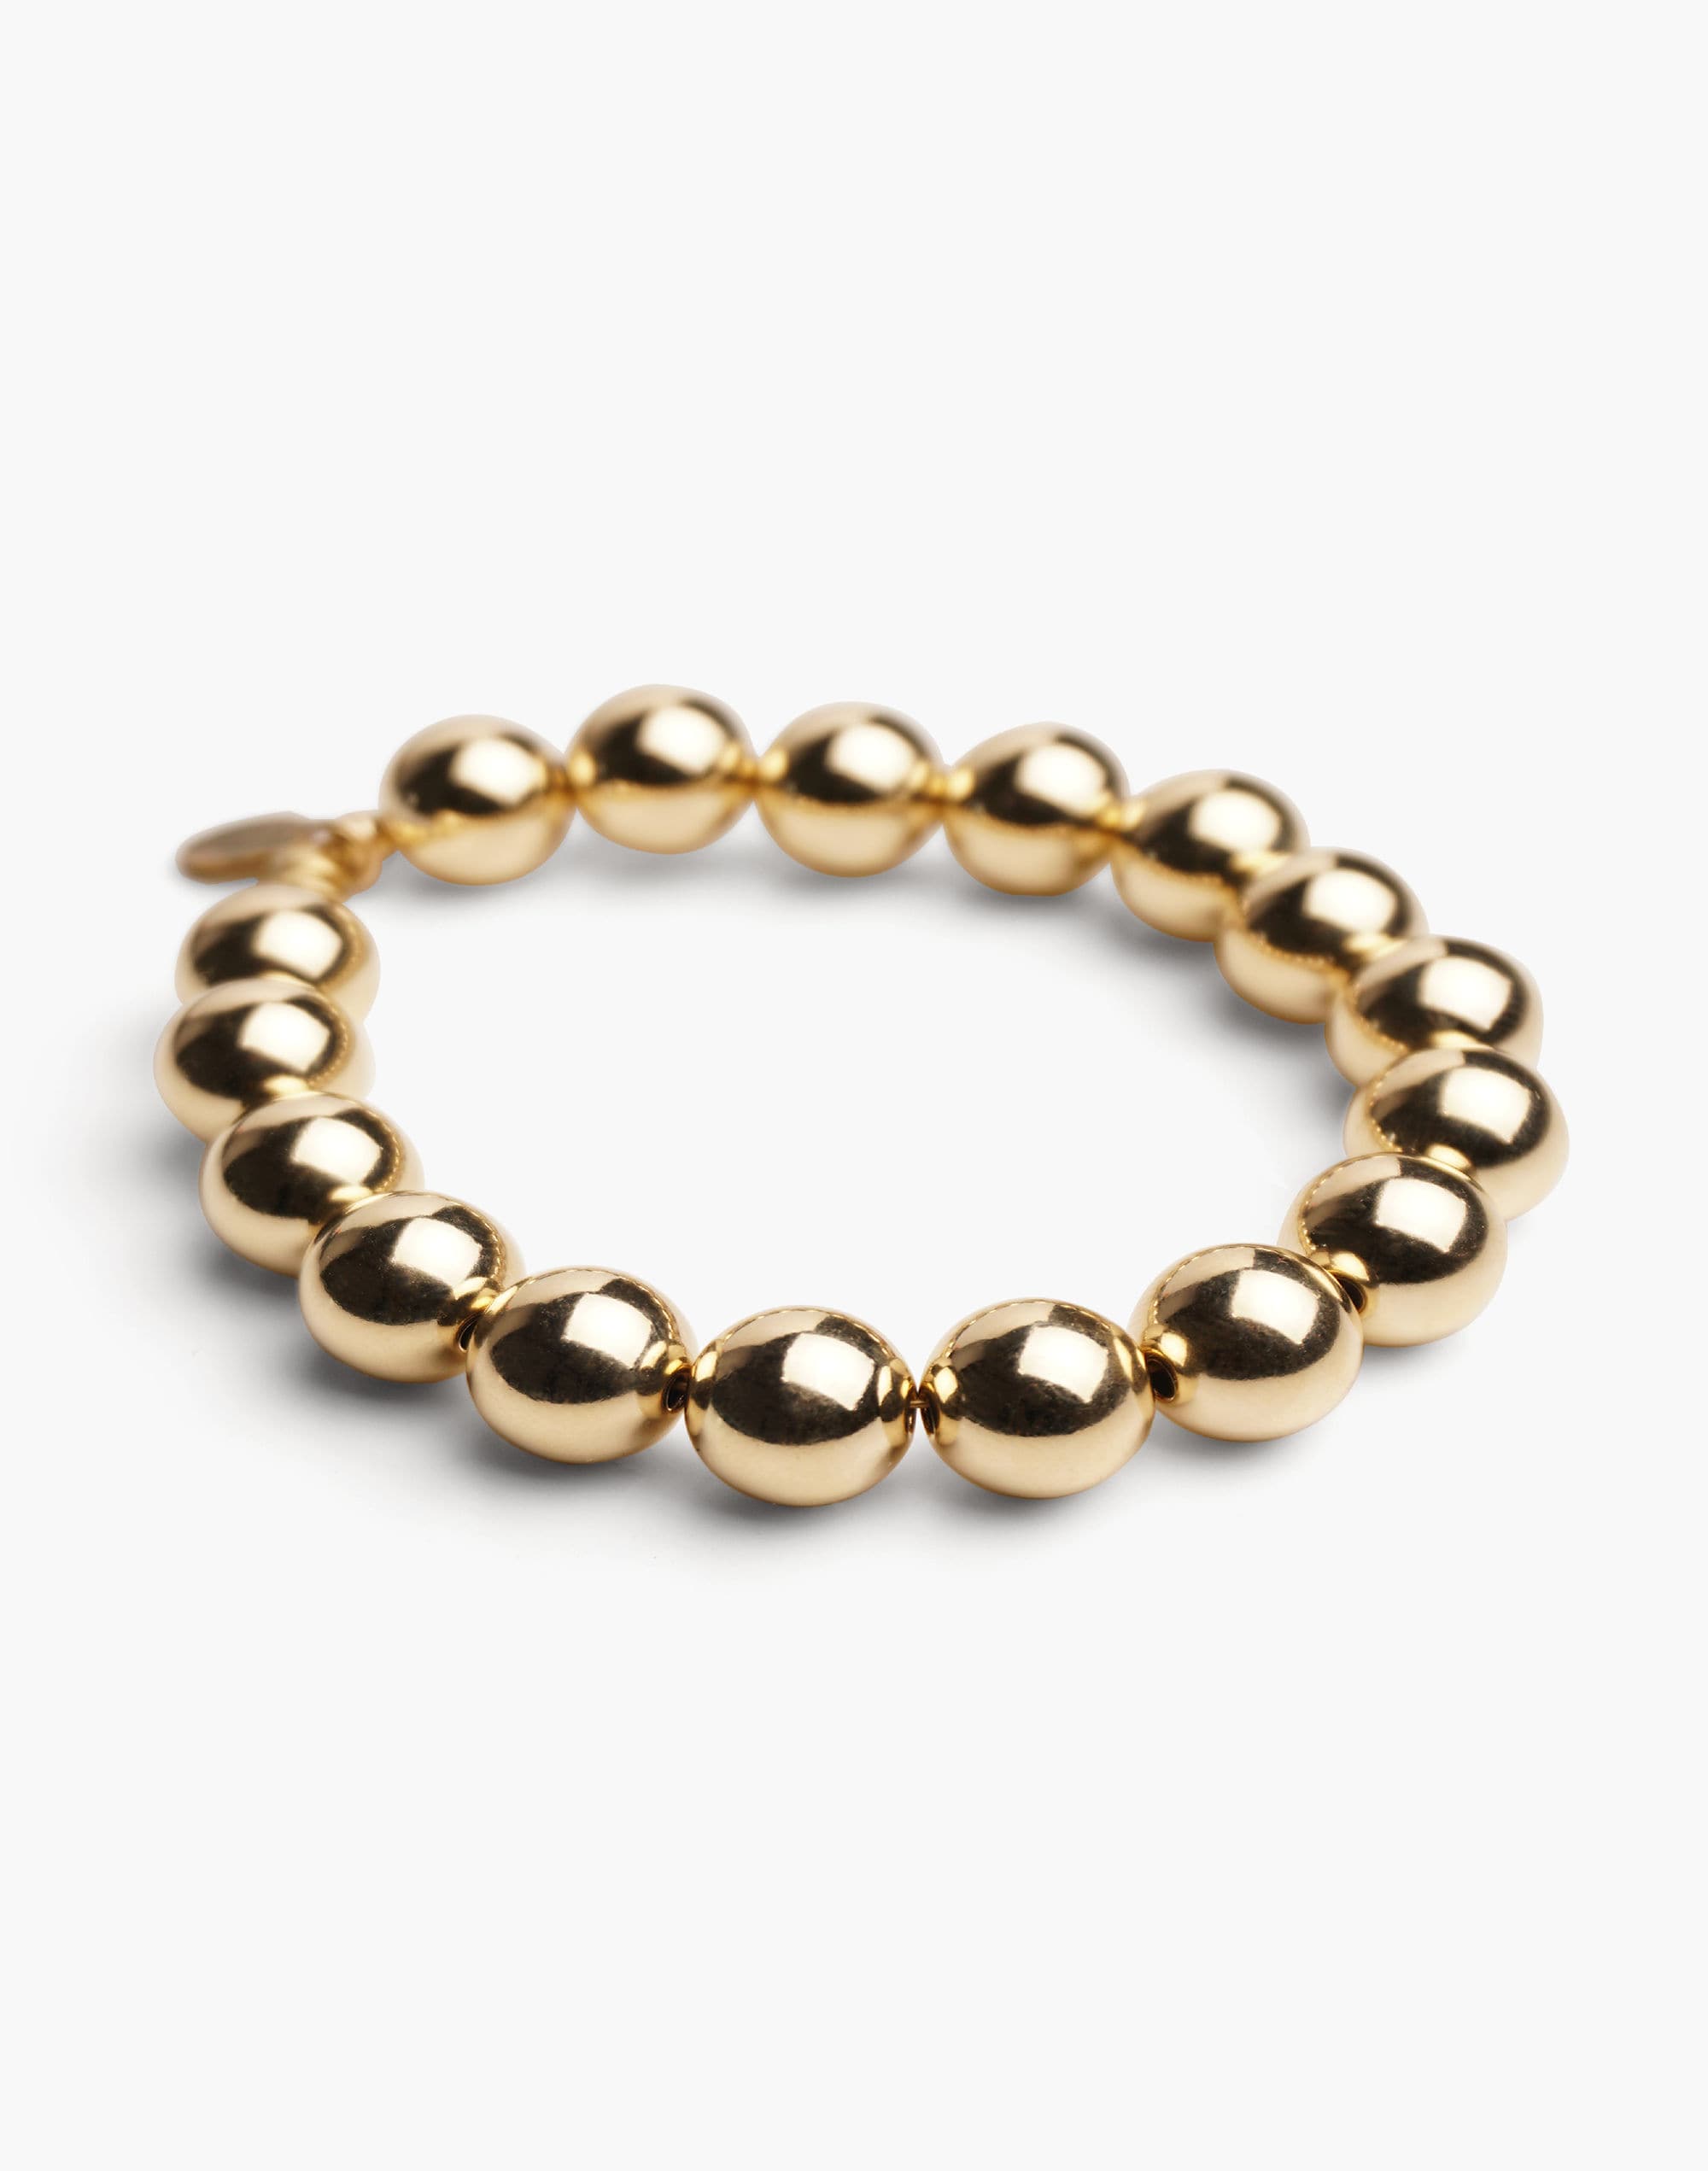 Charlotte Cauwe Studio Bead Bracelet in Gold 10mm